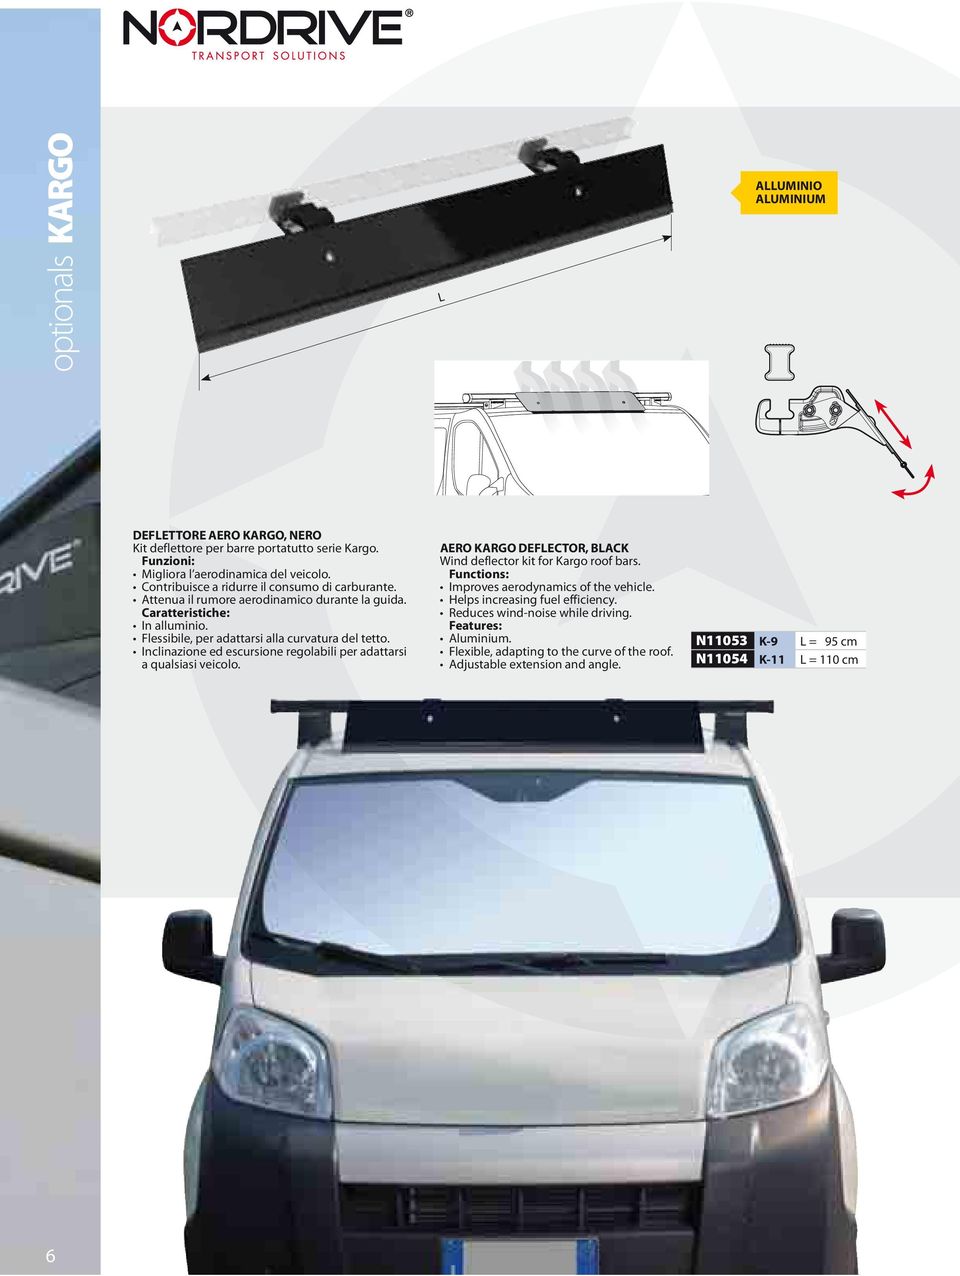 Inclinazione ed escursione regolabili per adattarsi a qualsiasi veicolo. AERO KARGO DEFLECTOR, BLACK Wind deflector kit for Kargo roof bars.